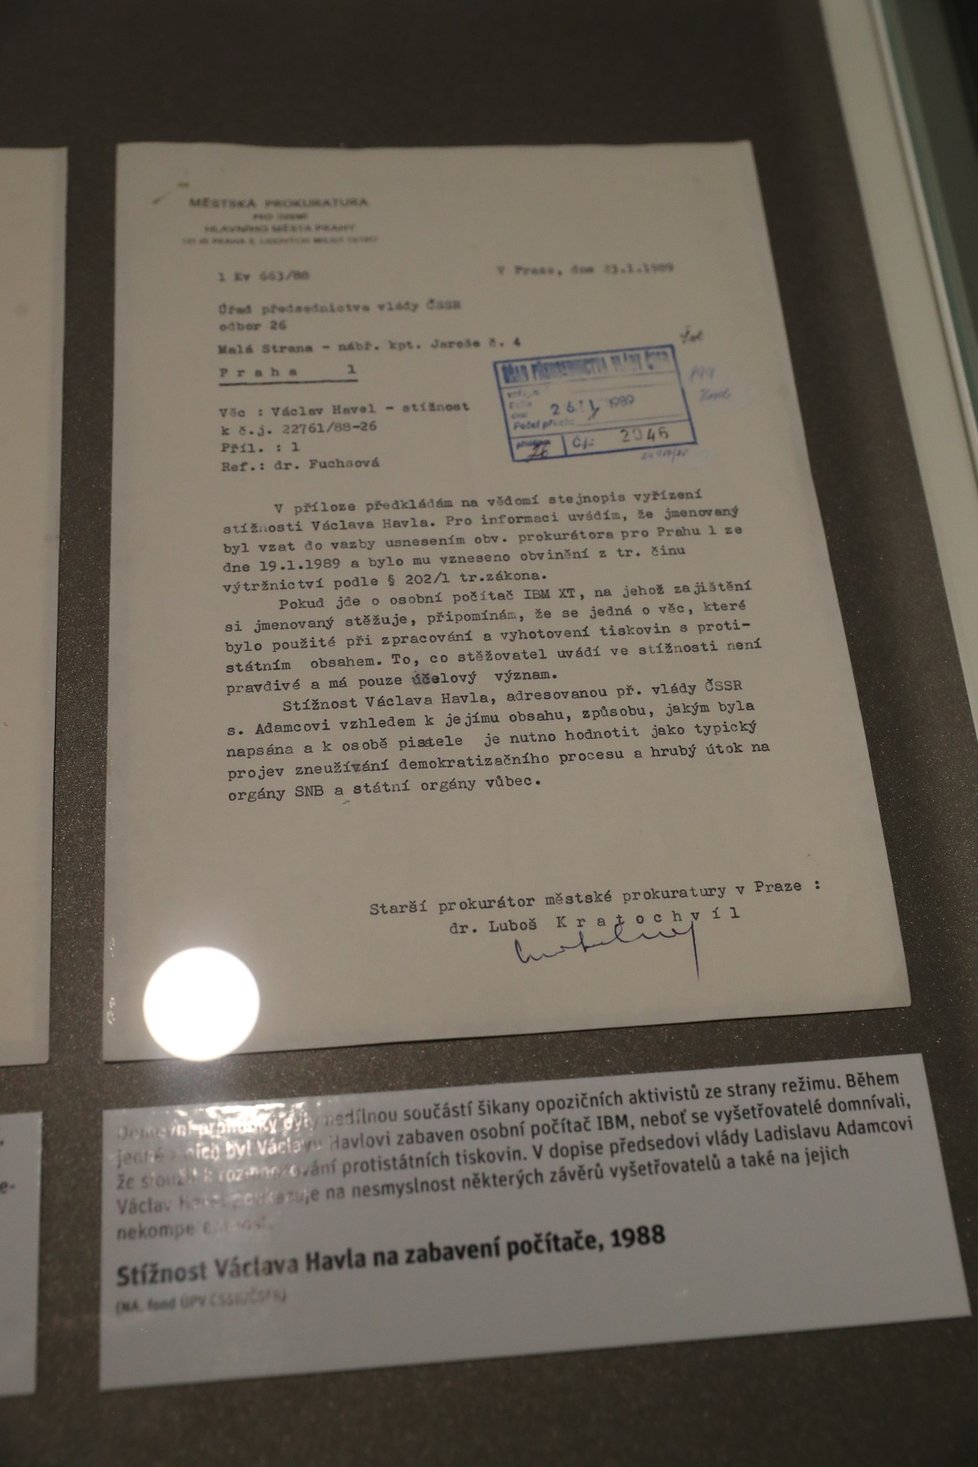 Z výstavy Havel na Hrad - Příběh roku 1989. Návštěvníci se mohou seznámit s řadou zajímavostí, jako třeba Havlův počítač, jeho osobní spis, stejnokroj, který vězni v té době nosili.